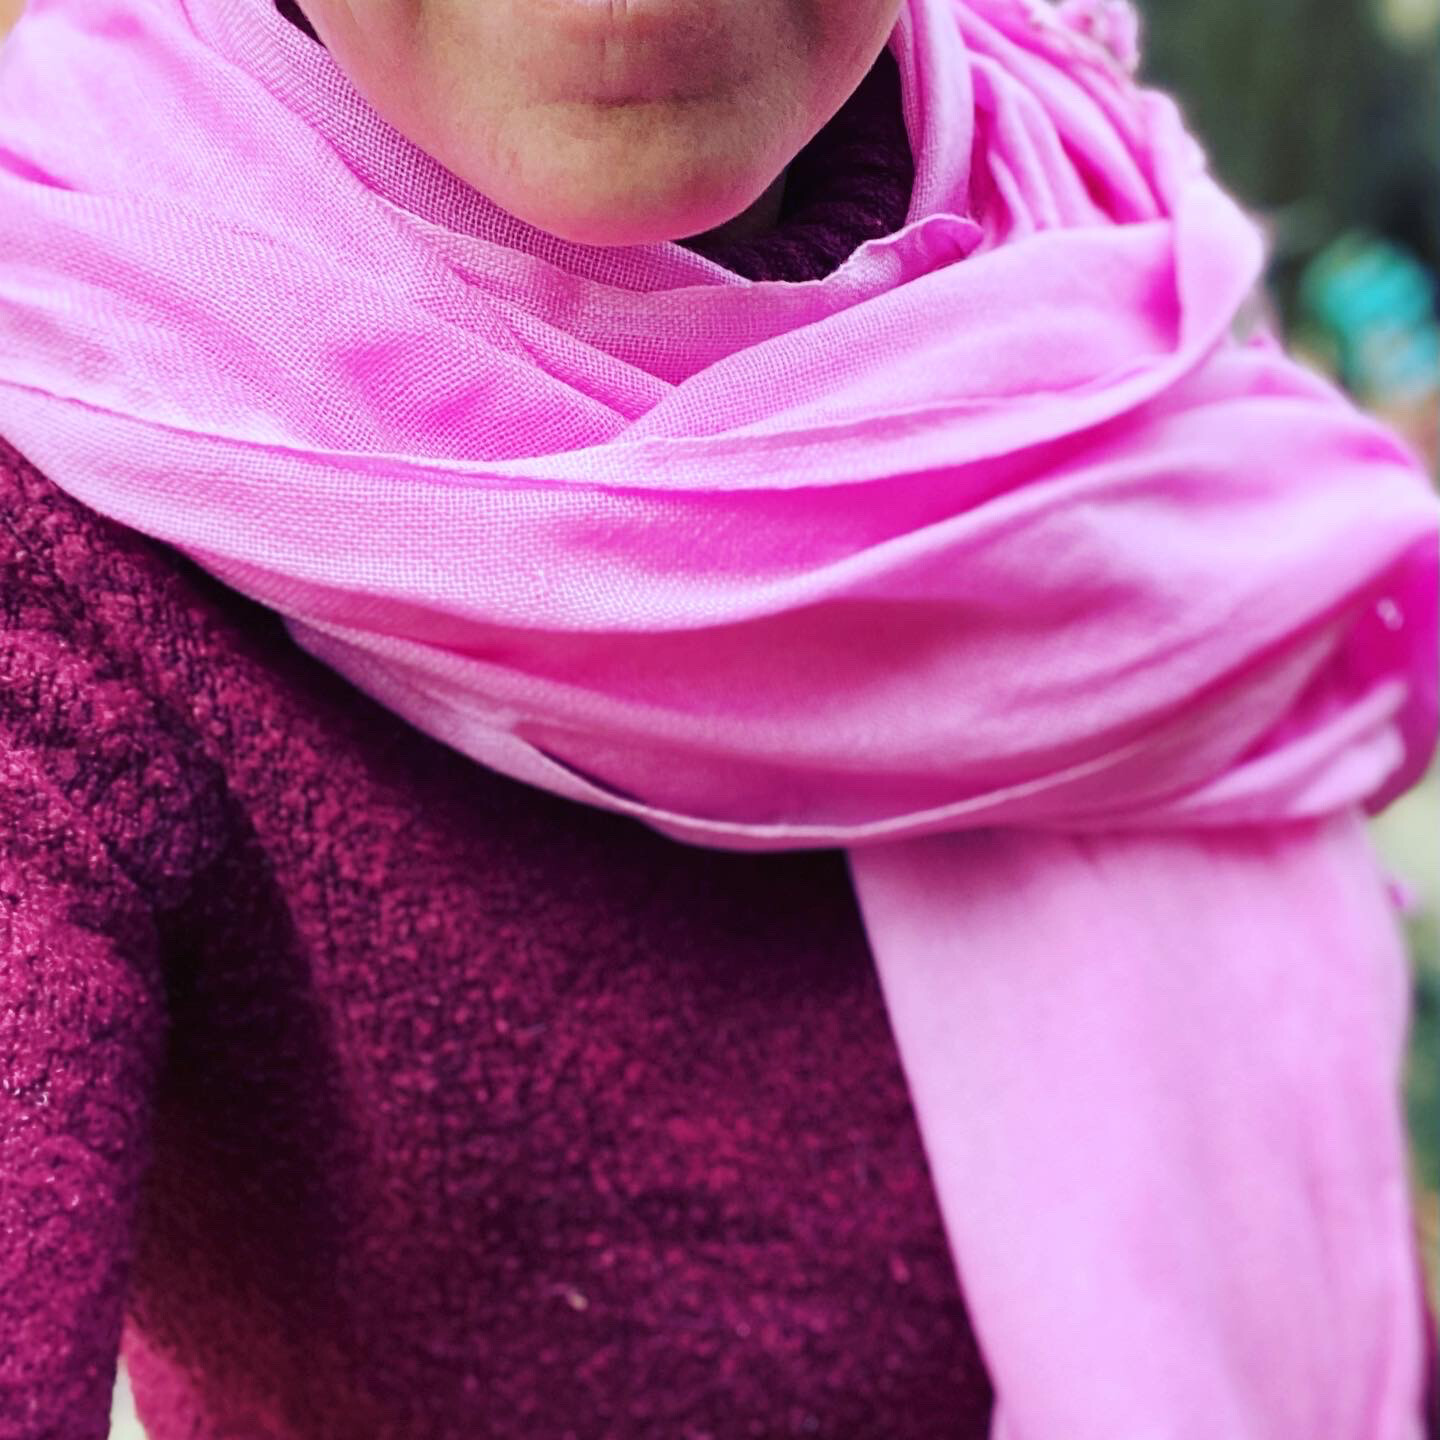 Pachmina léger 100% cachemire pour le Nepal couleur rose clair